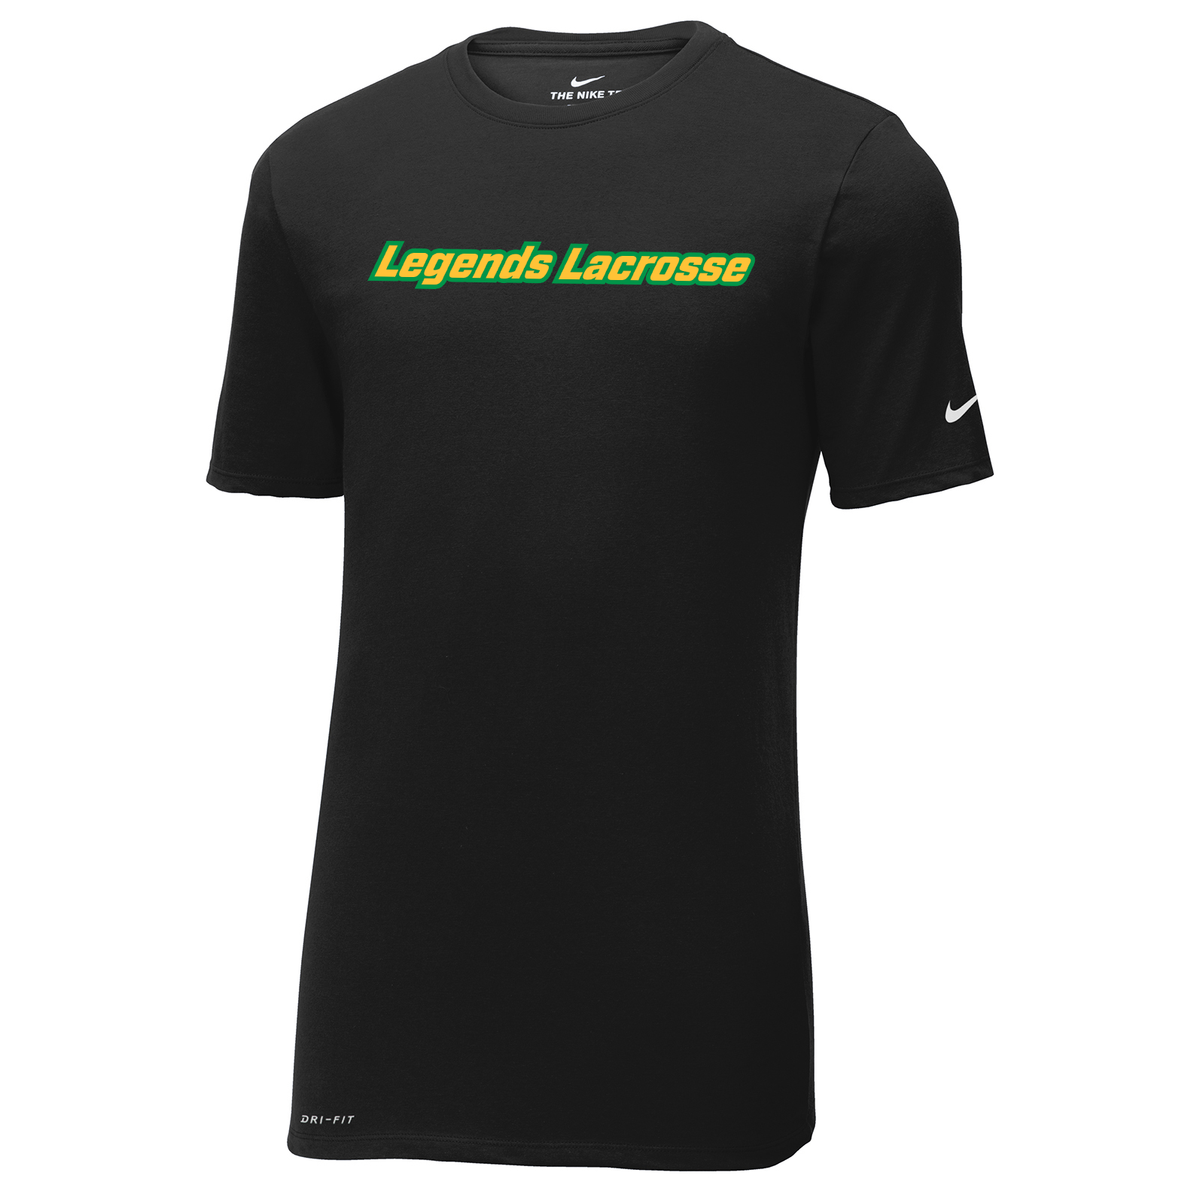 Legends Lacrosse Nike Dri-FIT Tee